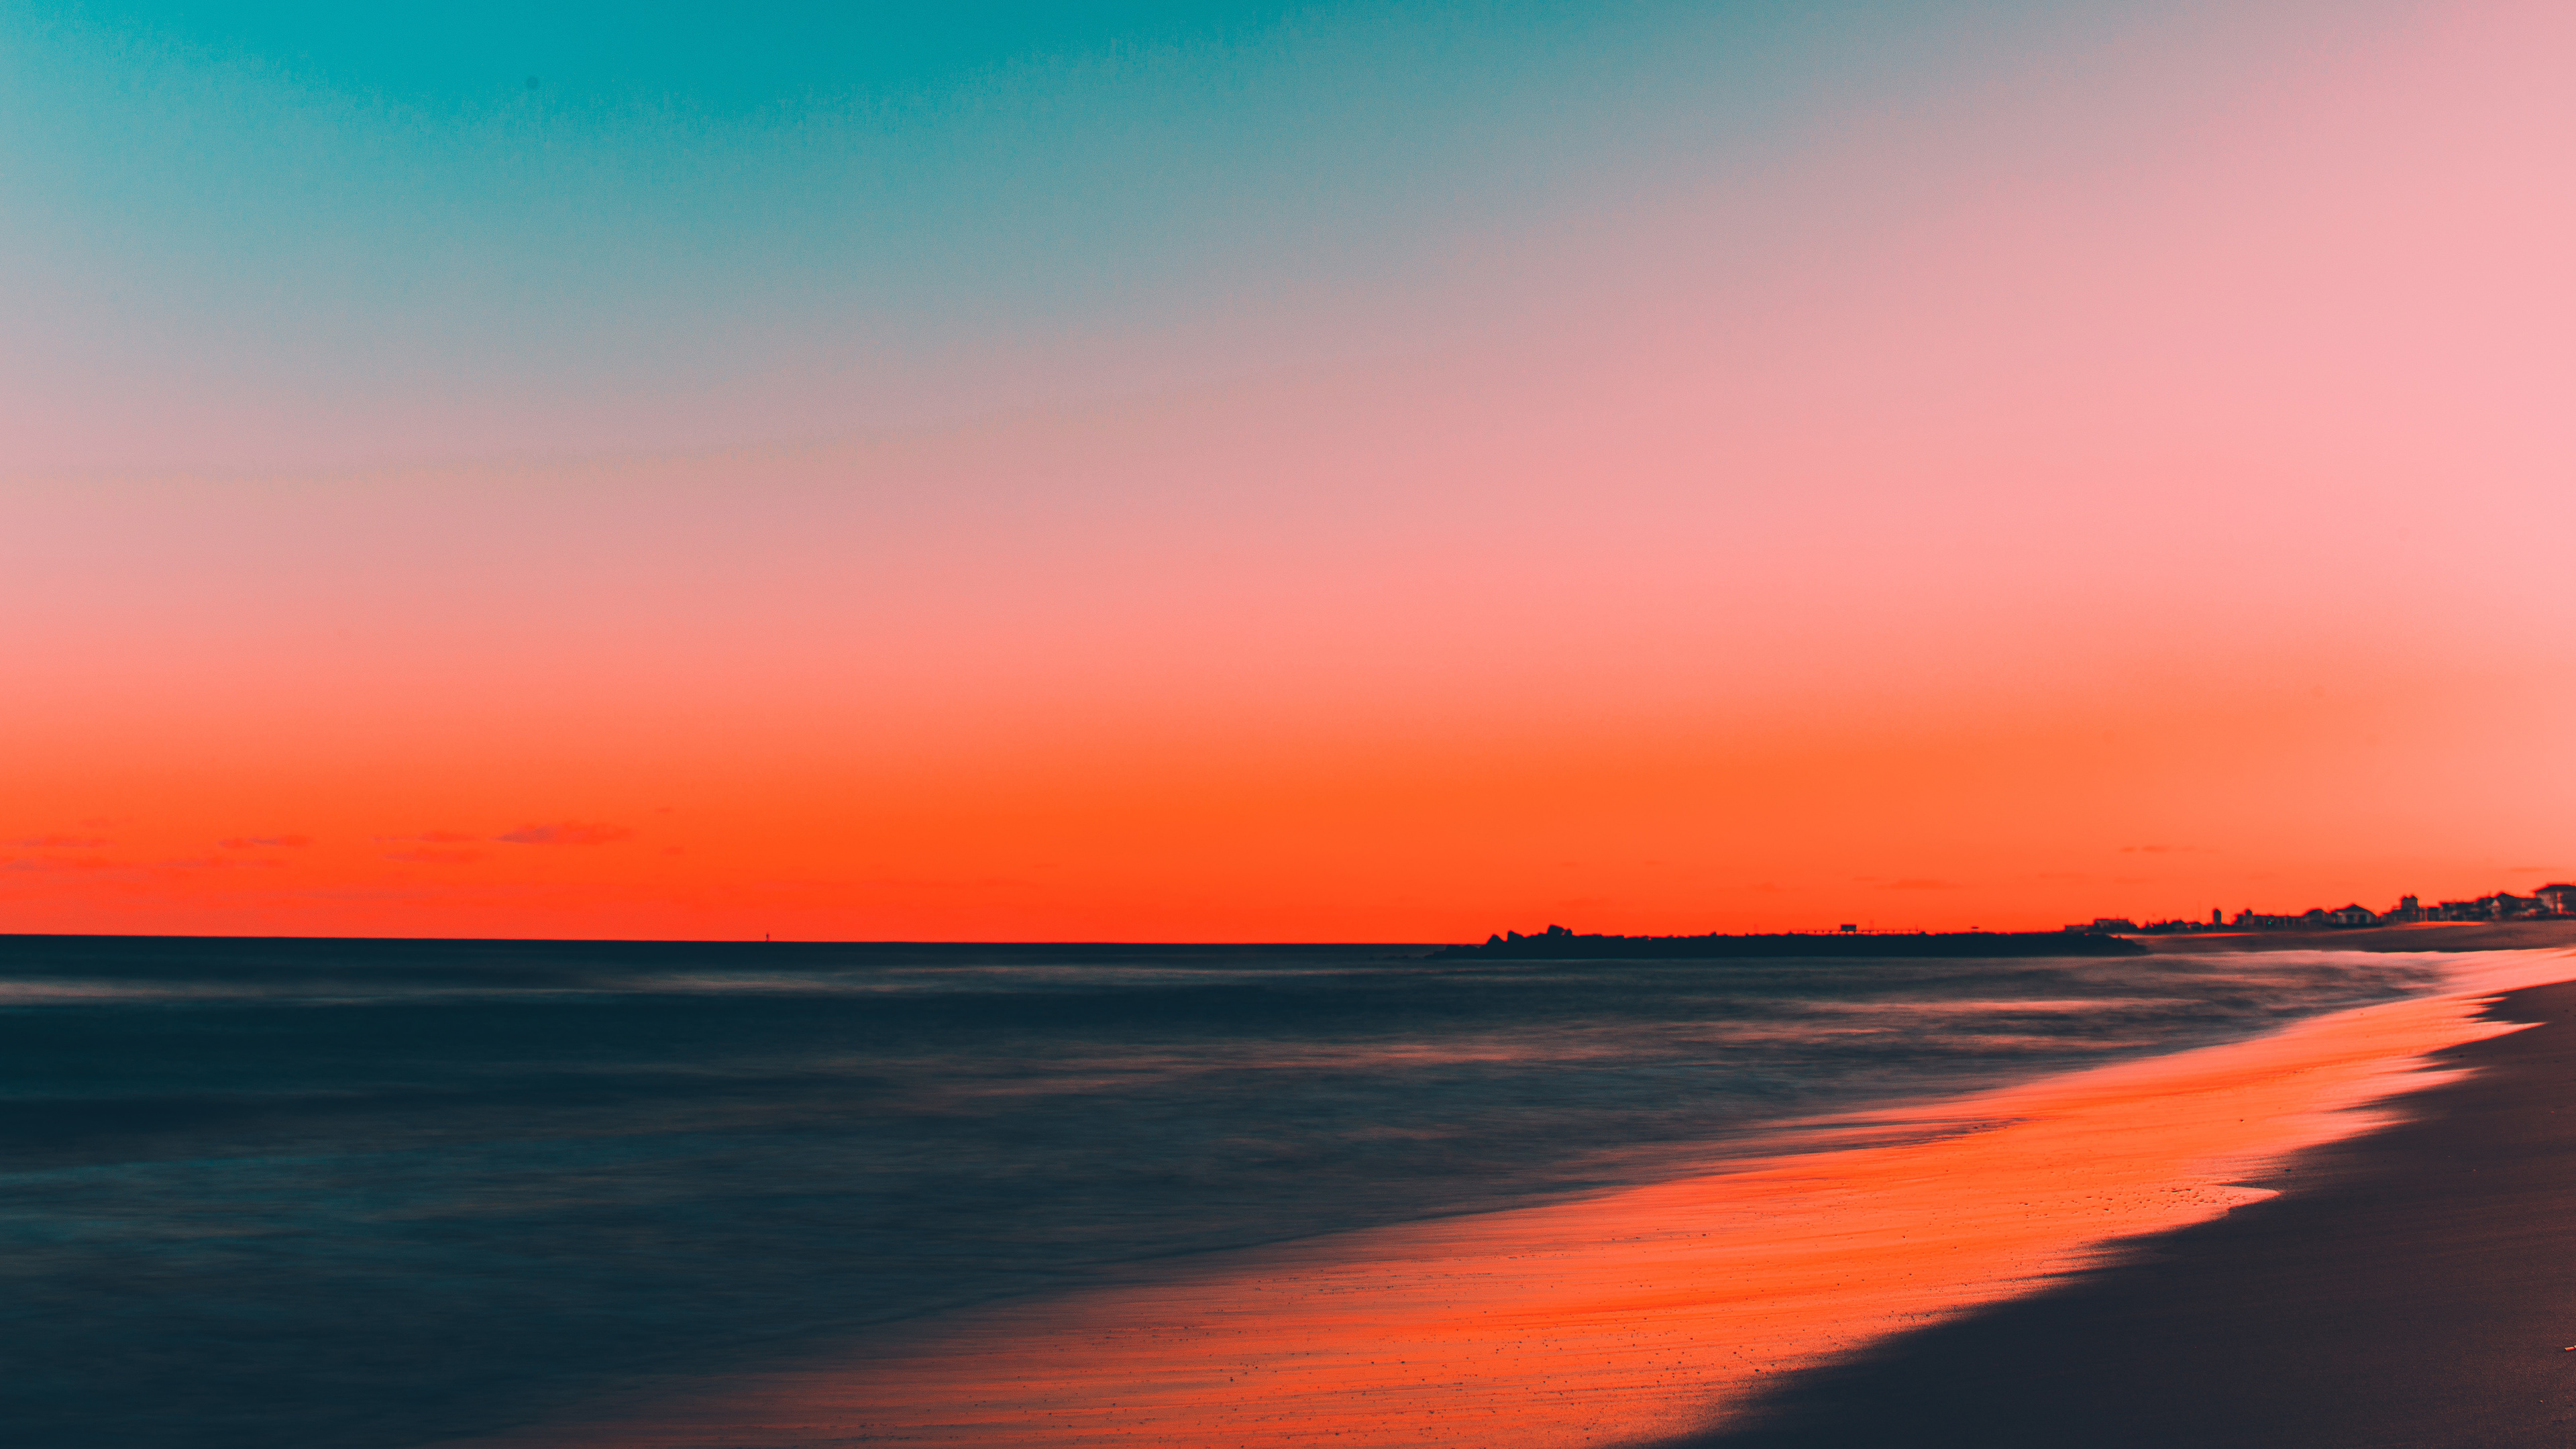 4K Sunset Beach Wallpaper : Sunset Beach Tropical Paradise Ocean